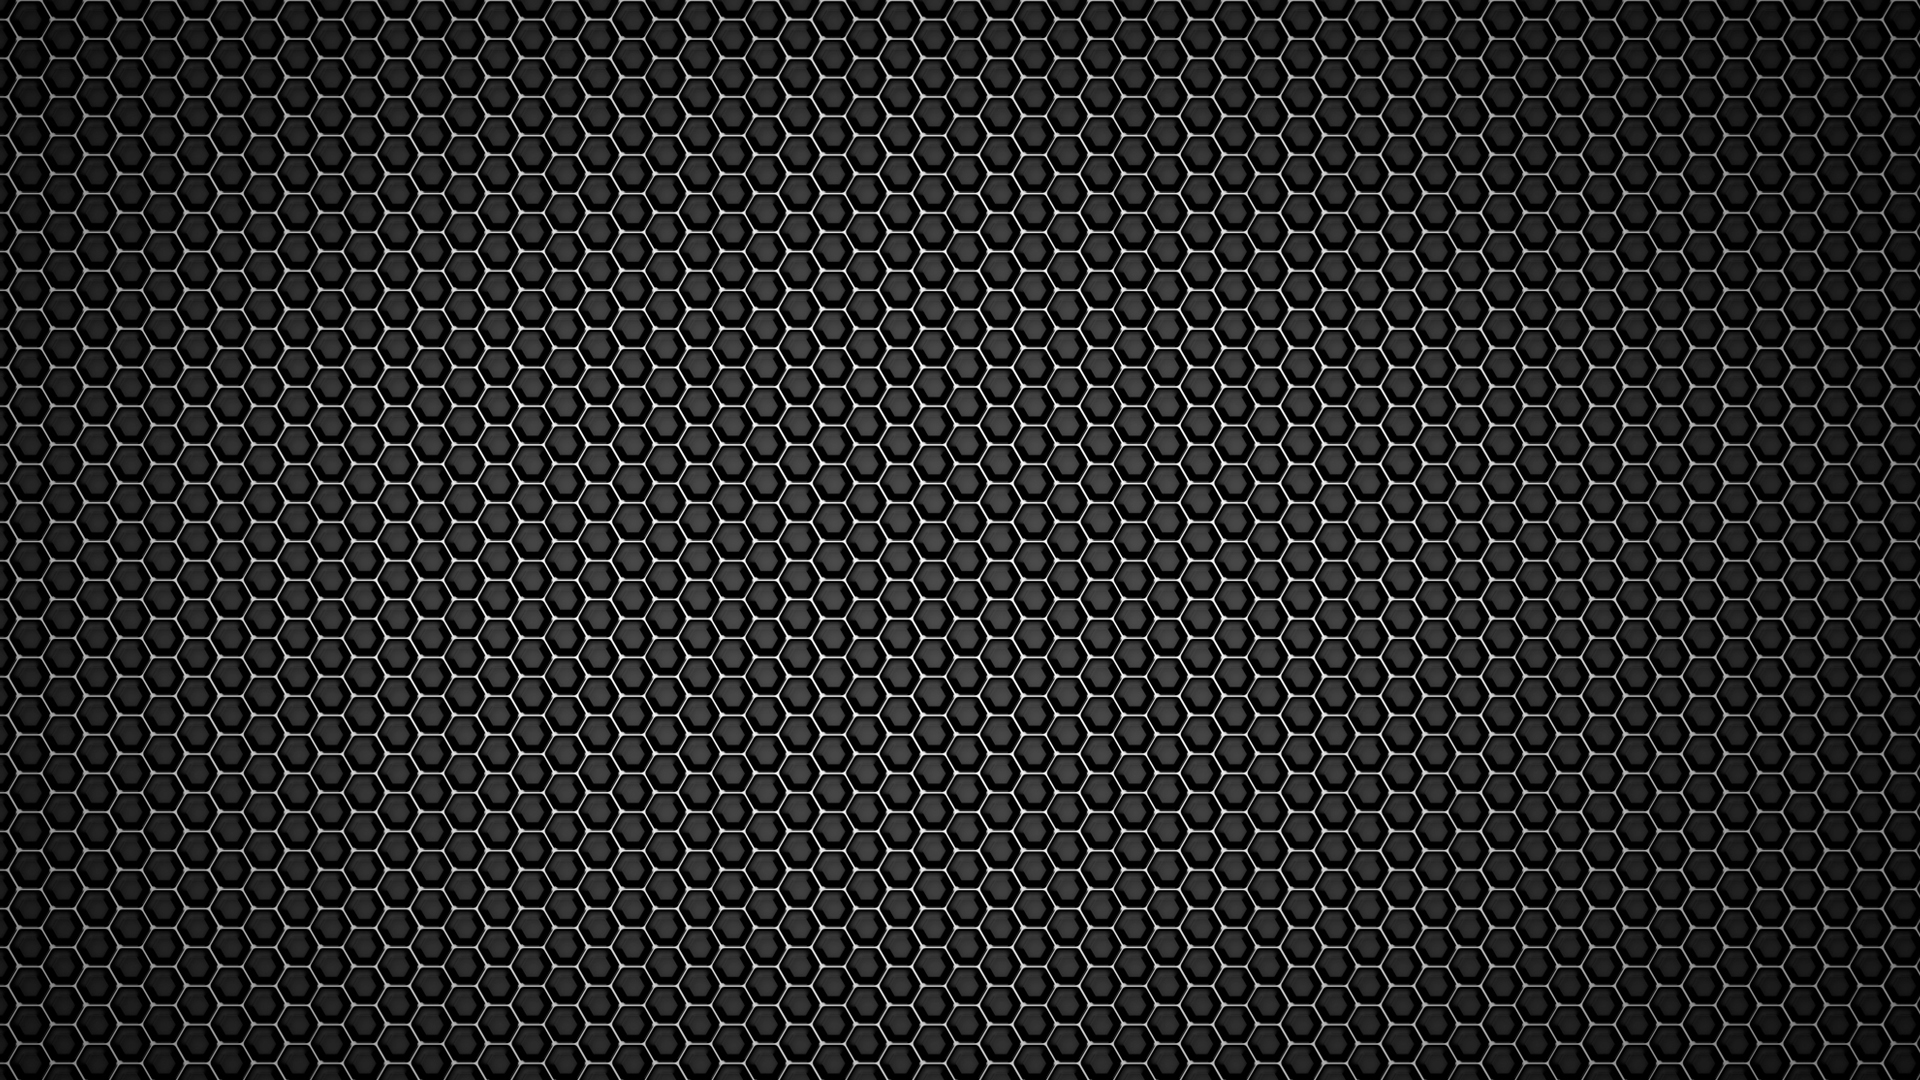 General 1920x1080 pattern metal dark background hexagon